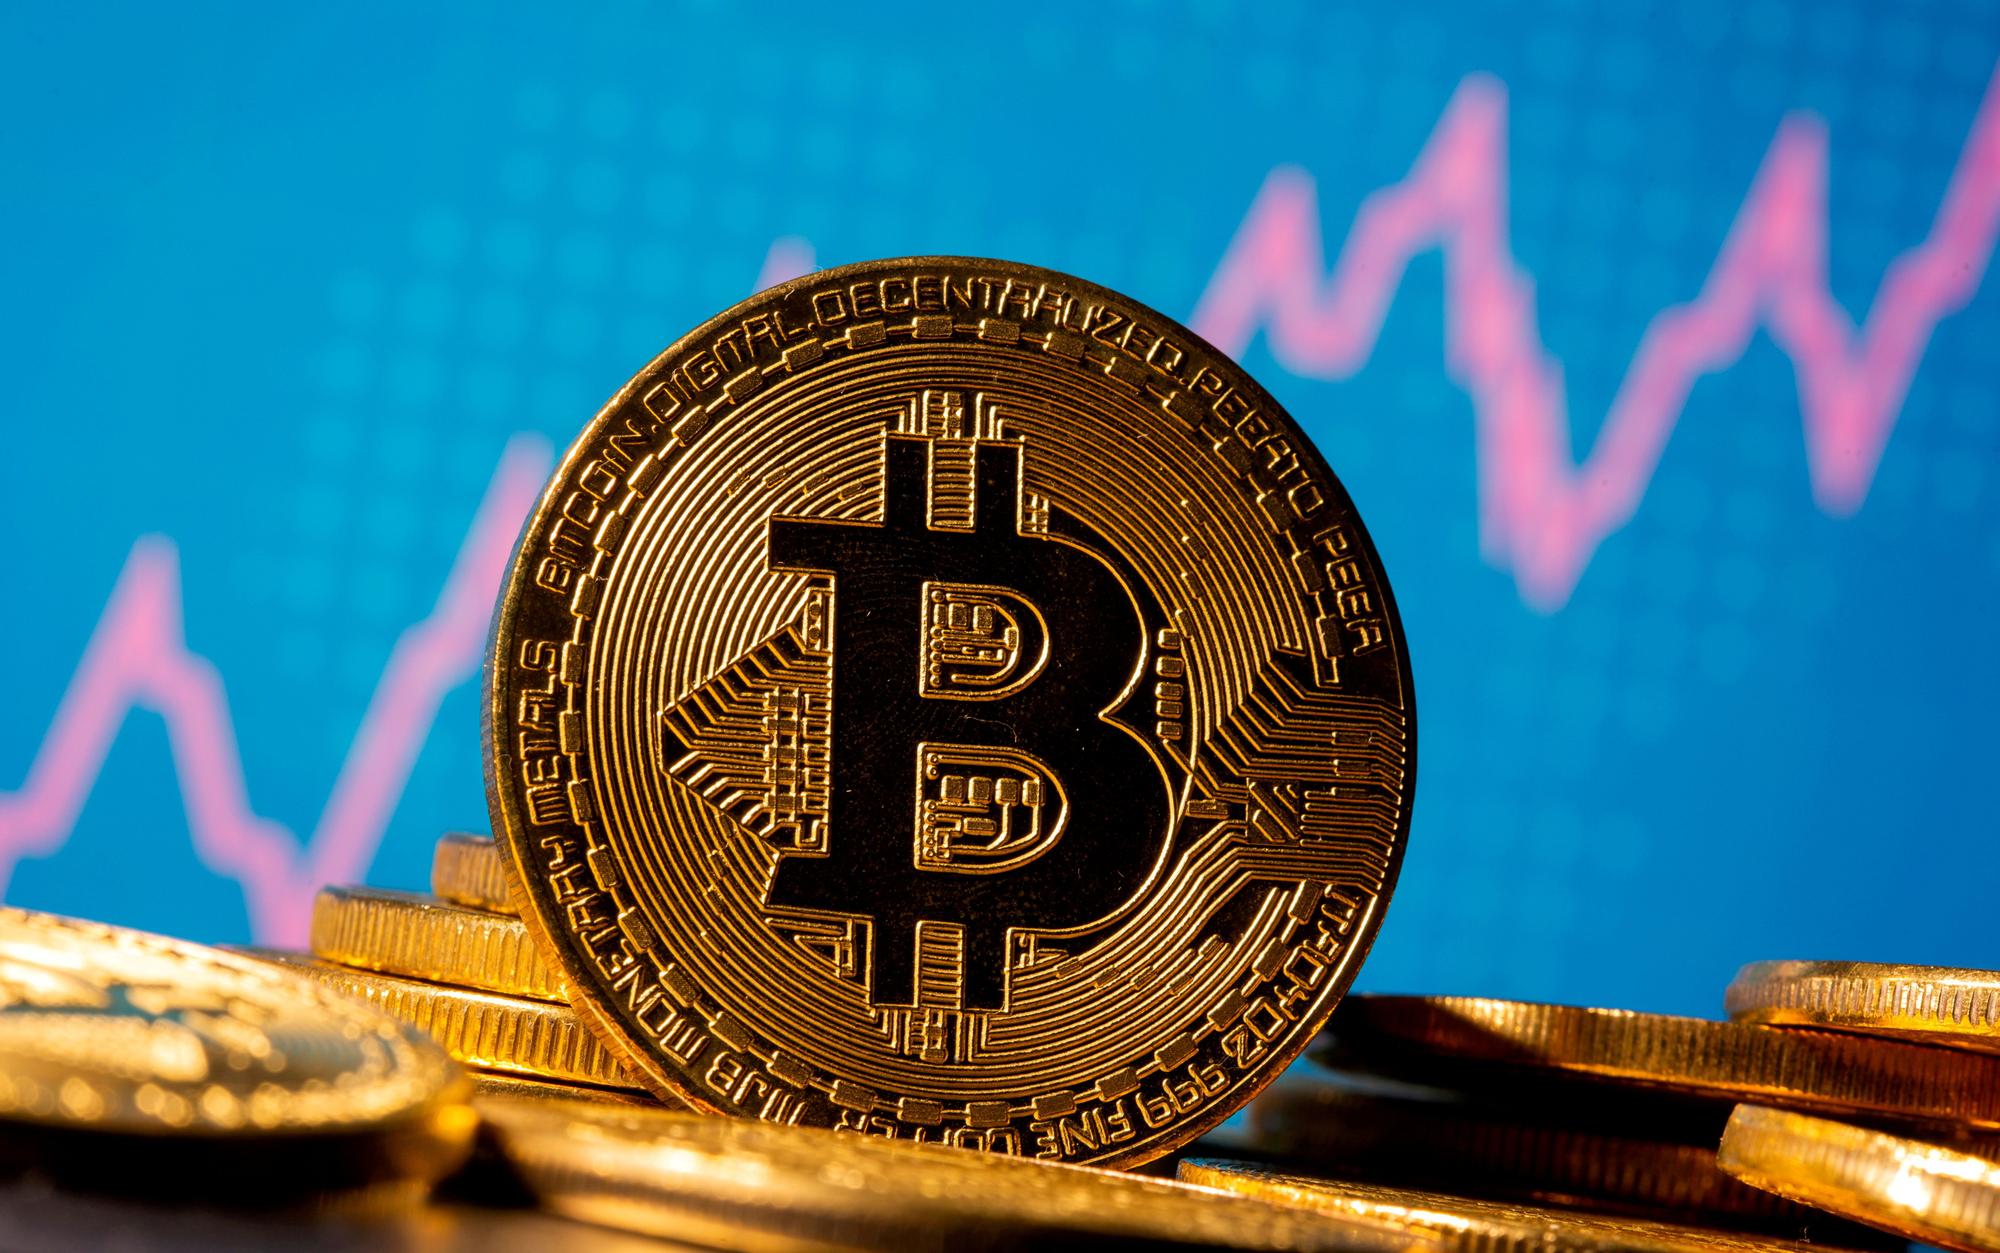 El Bitcoin es la criptomoneda más conocida